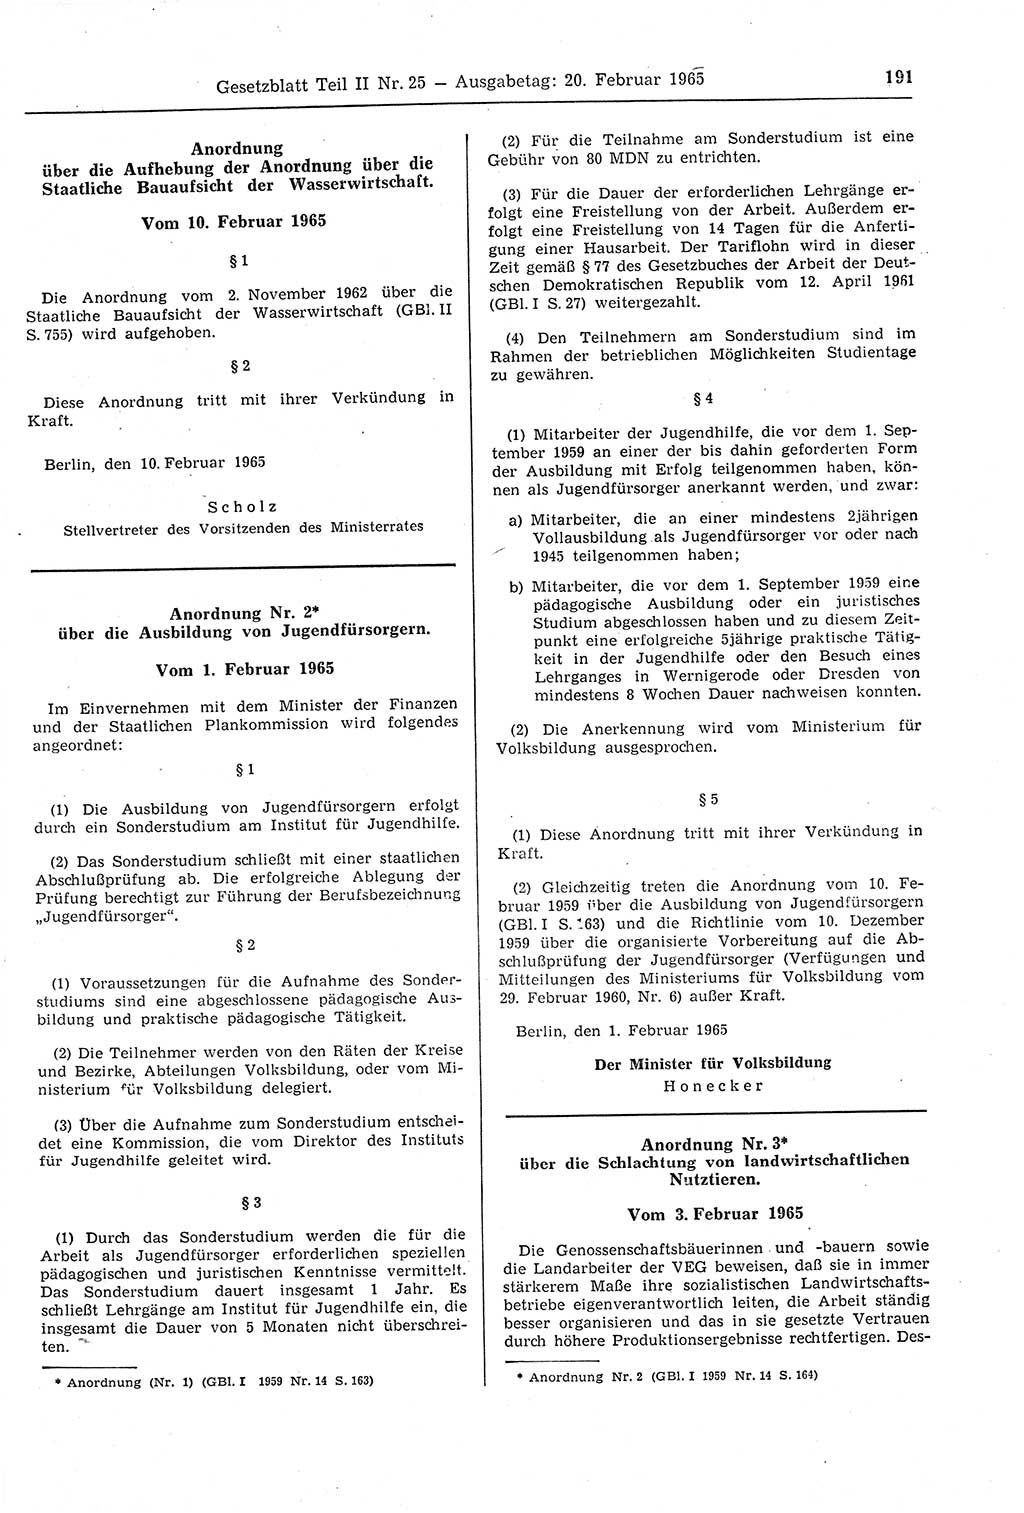 Gesetzblatt (GBl.) der Deutschen Demokratischen Republik (DDR) Teil ⅠⅠ 1965, Seite 191 (GBl. DDR ⅠⅠ 1965, S. 191)